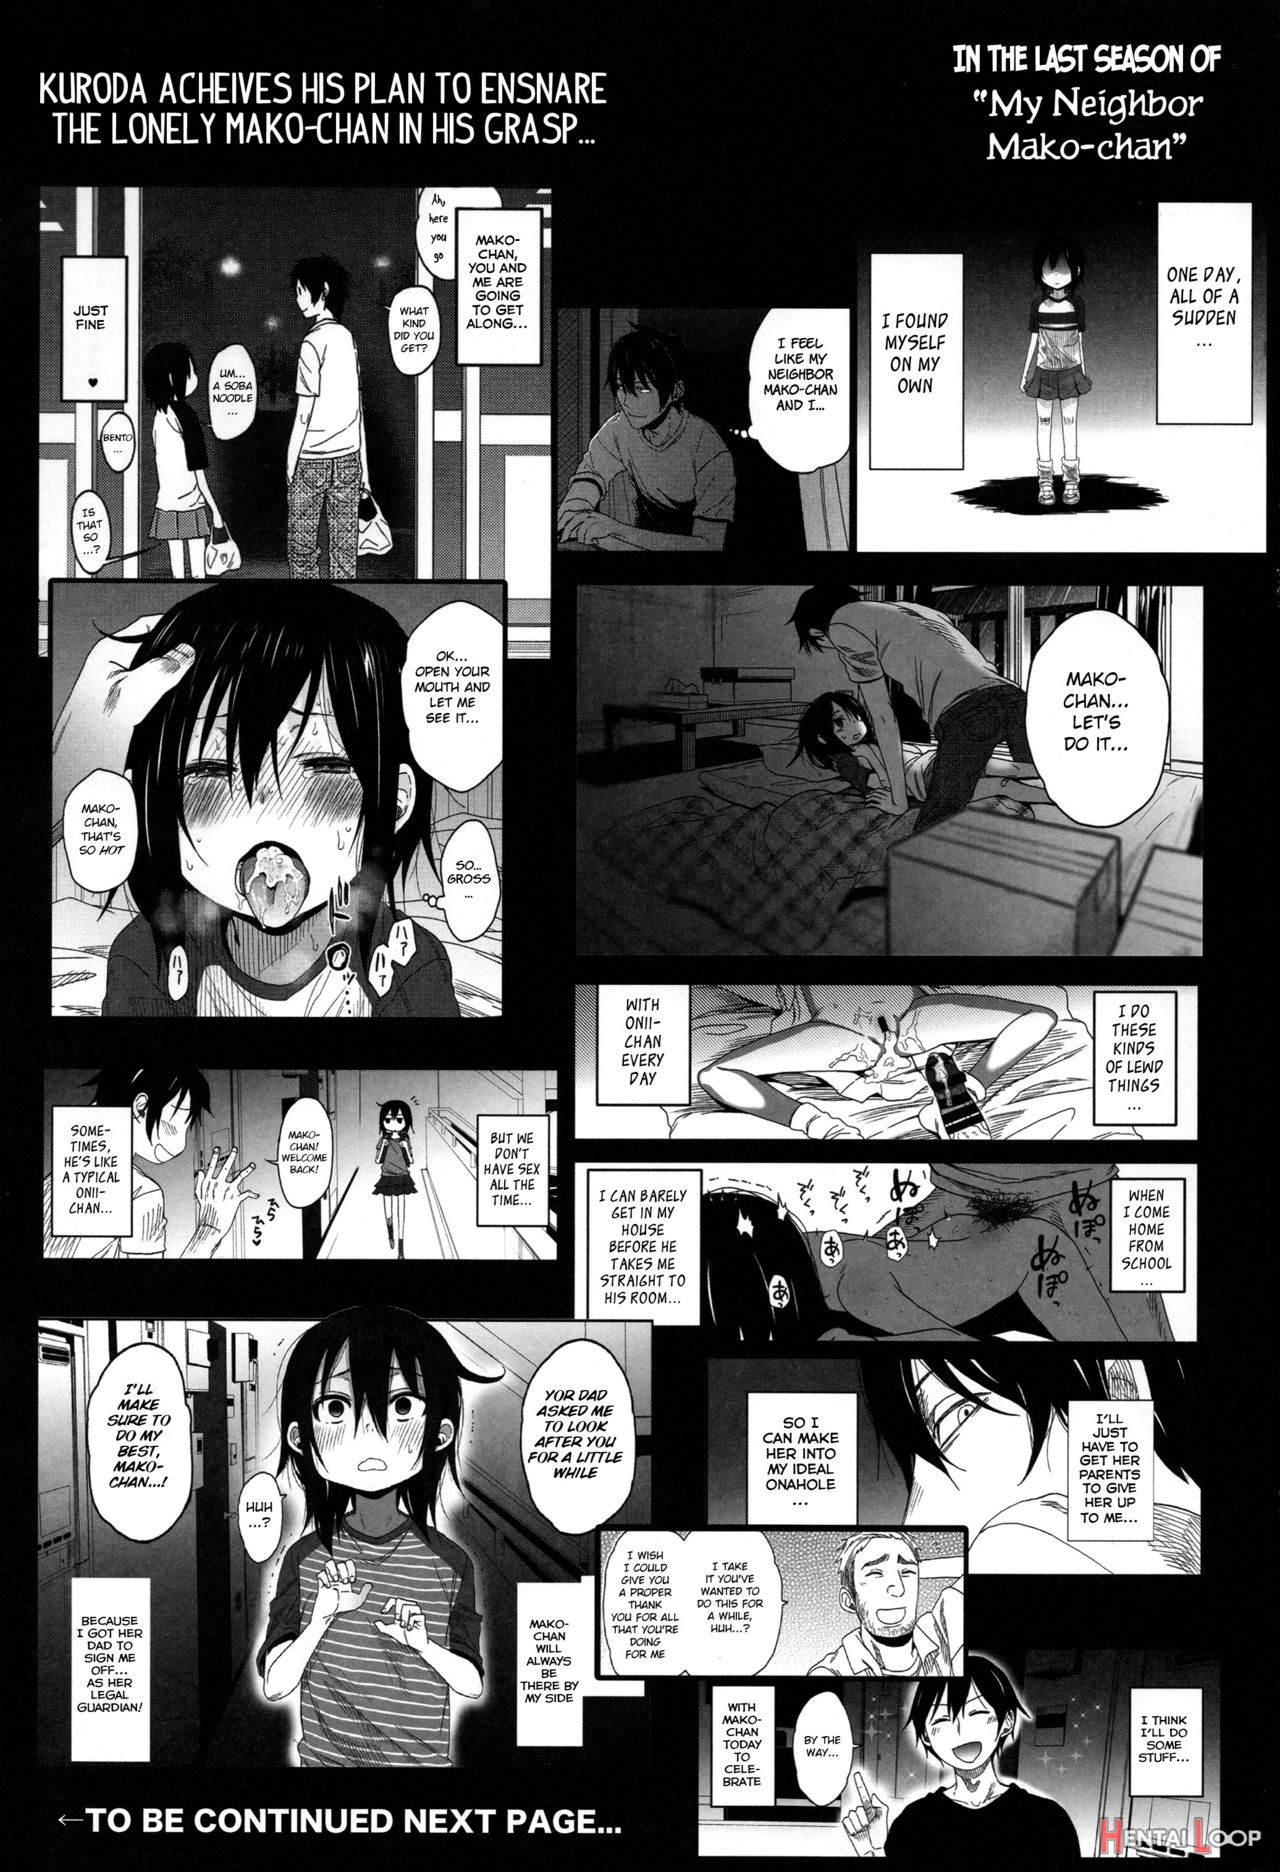 Tonari No Mako-chan Season 2 Vol. 1 page 3